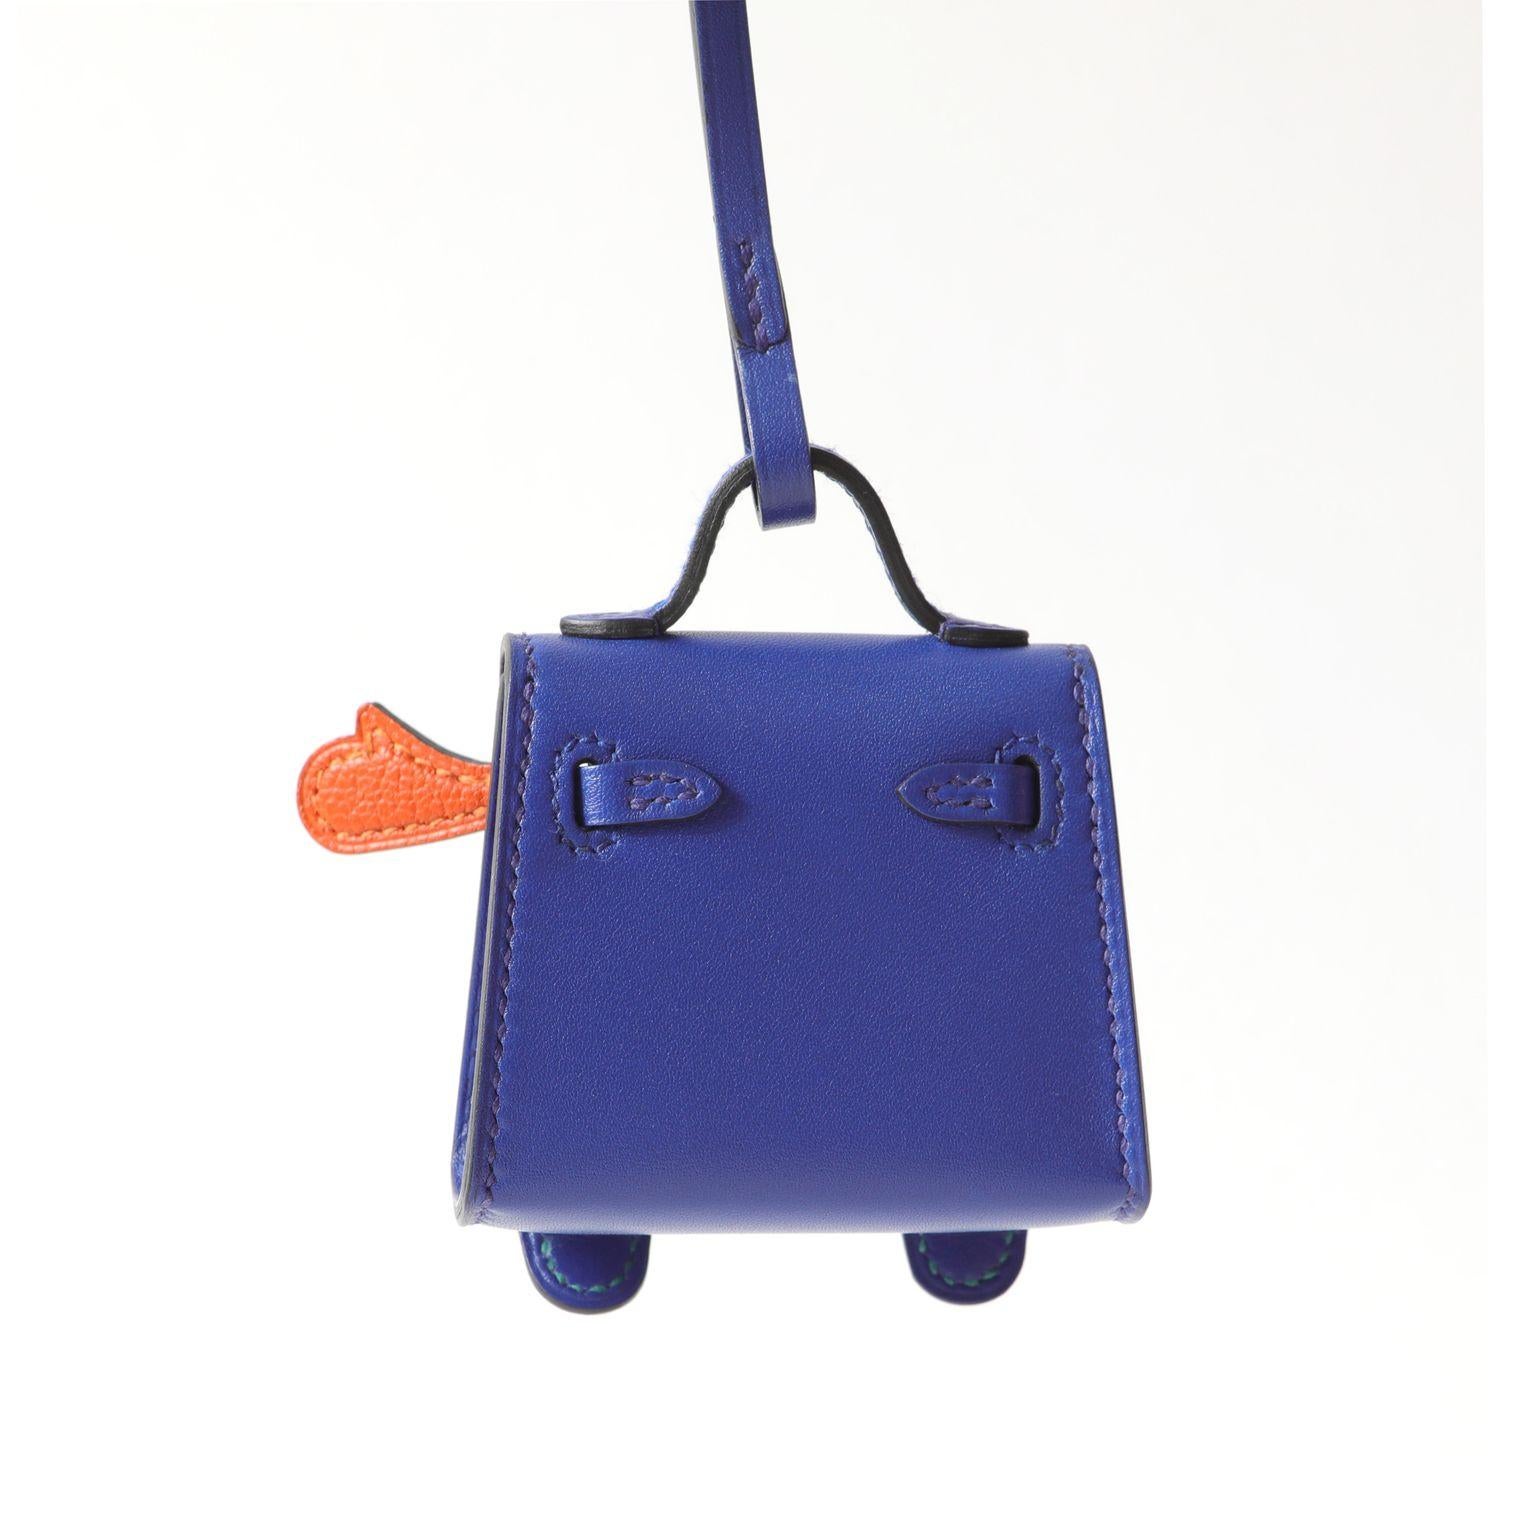 Cette breloque authentique Hermès Blue Electric Kelly Doll Bag Charm est neuve.  Adorable sac Kelly iconique en bleu électrique brillant avec des ferrures en Palladium et une face colorée.  Boîte  inclus.

PBF 13672
